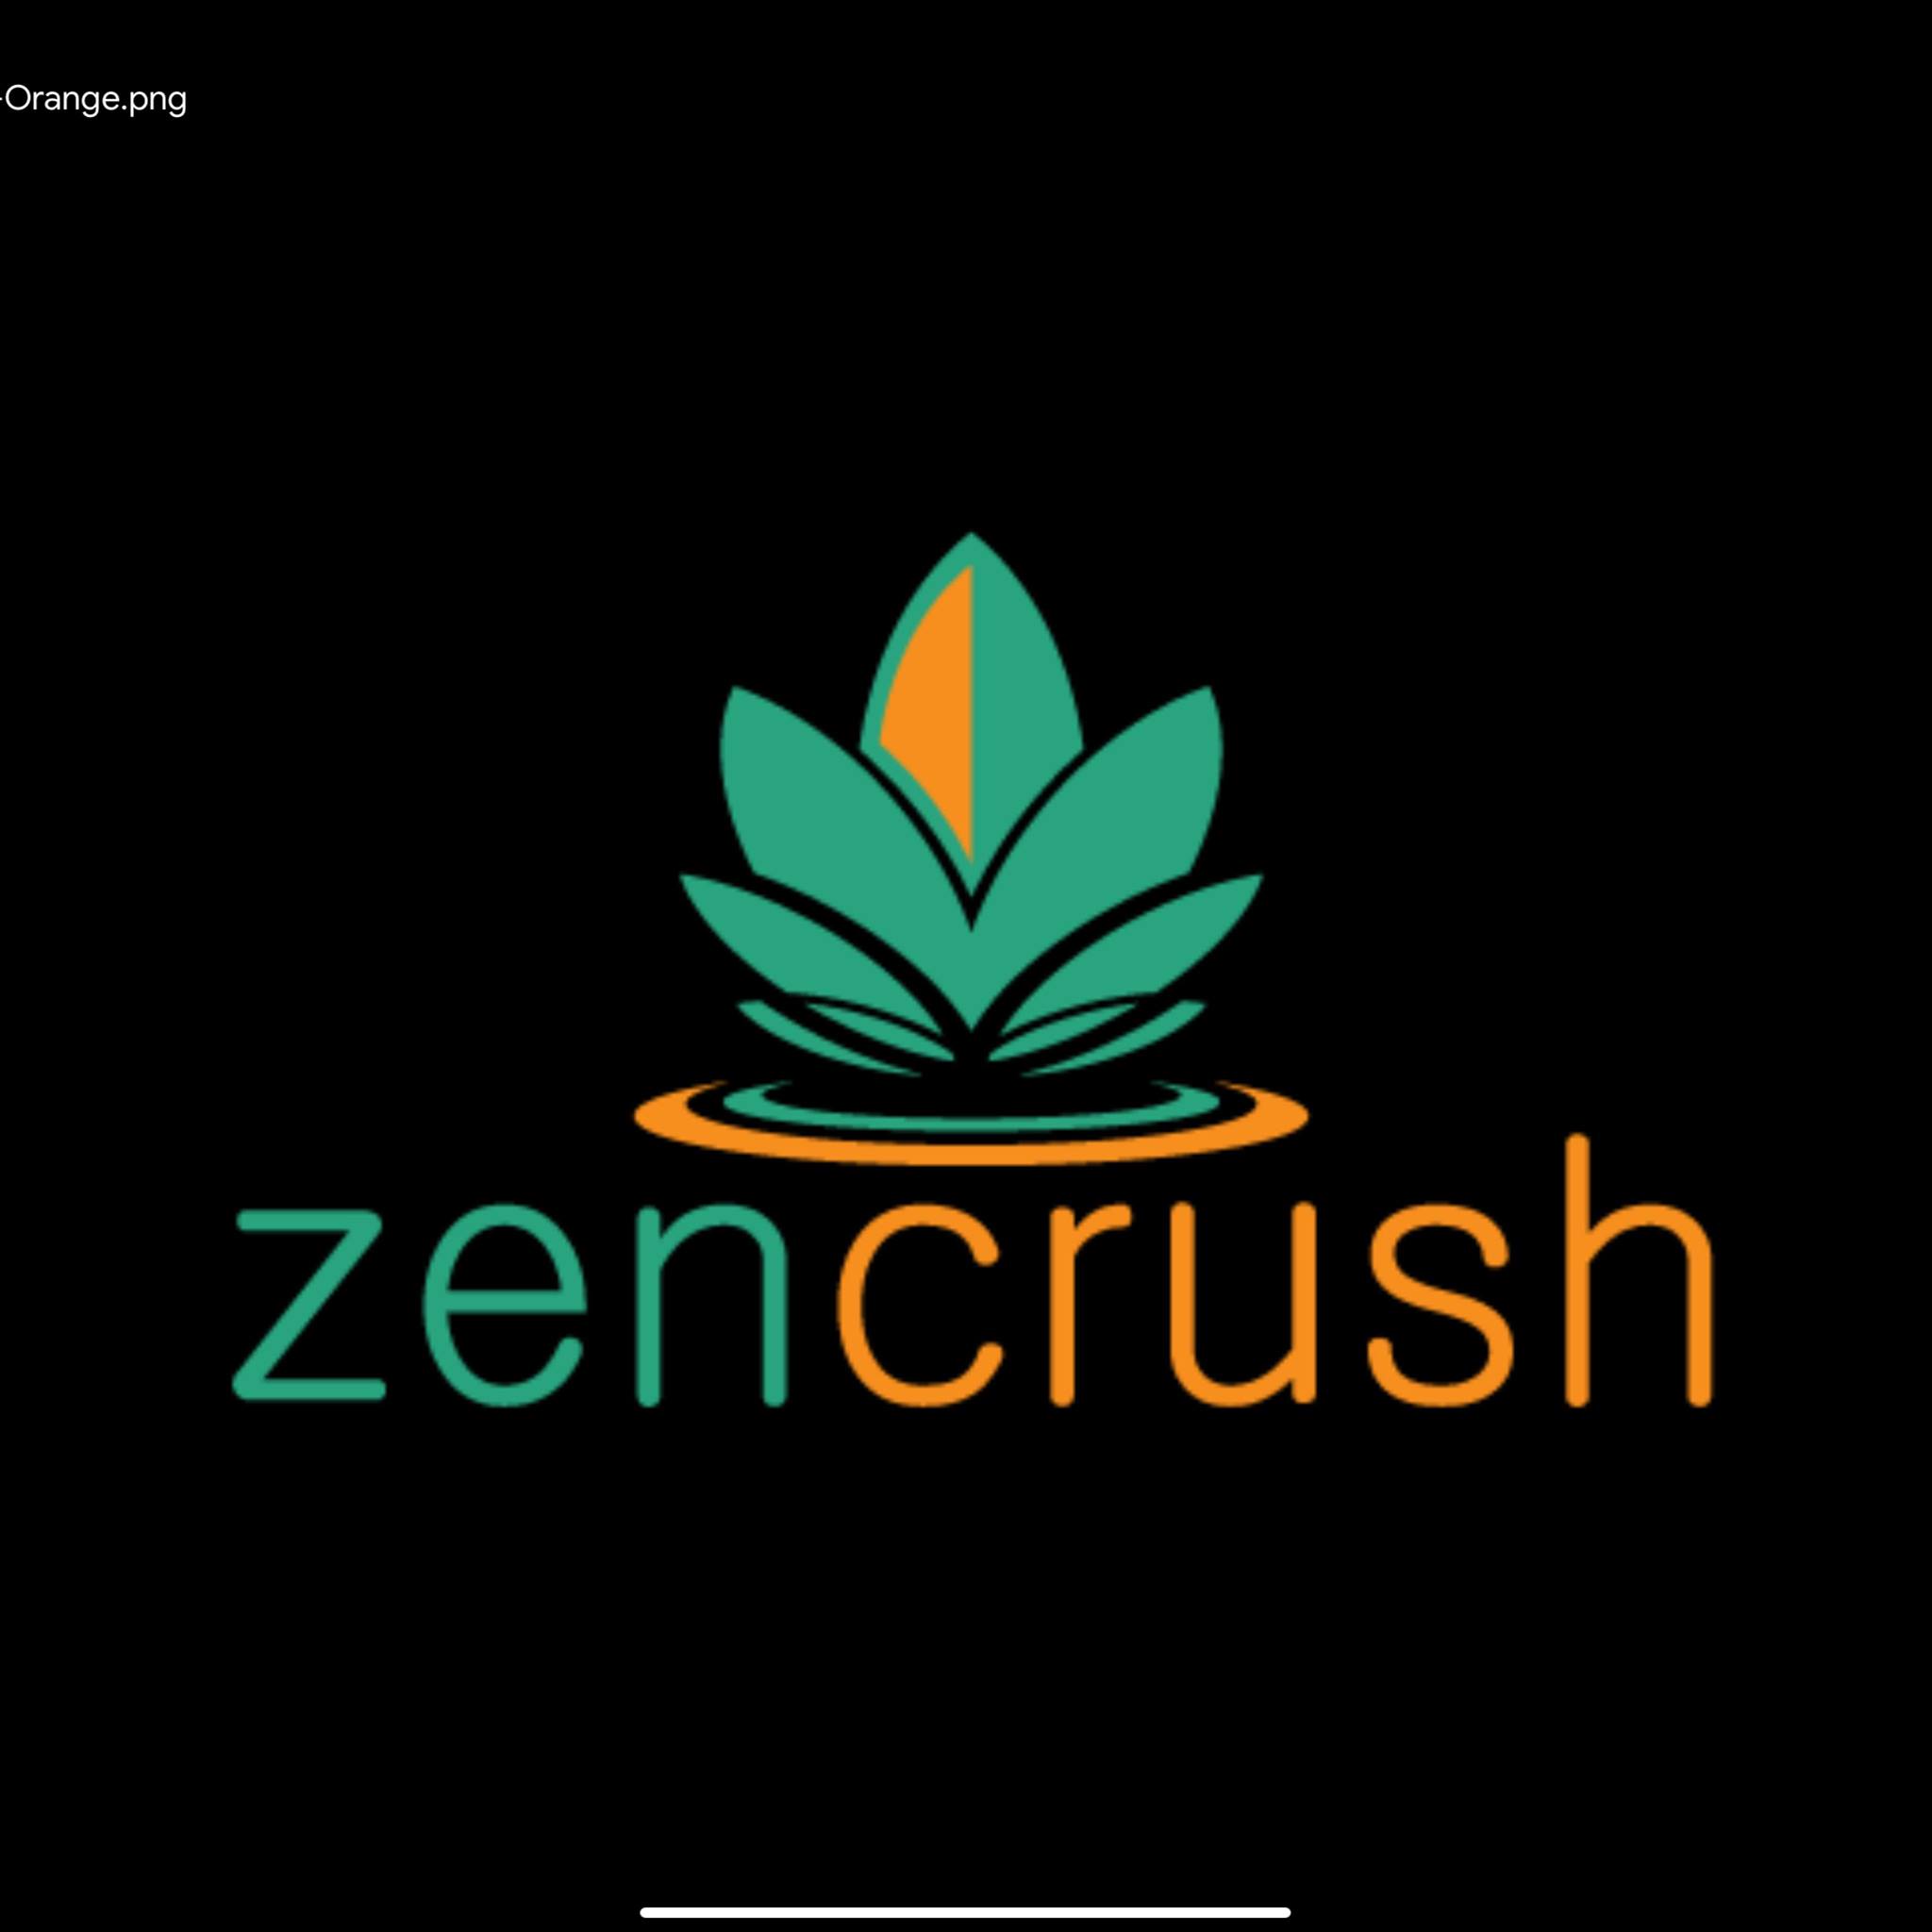 Zencrush LLC's Logo